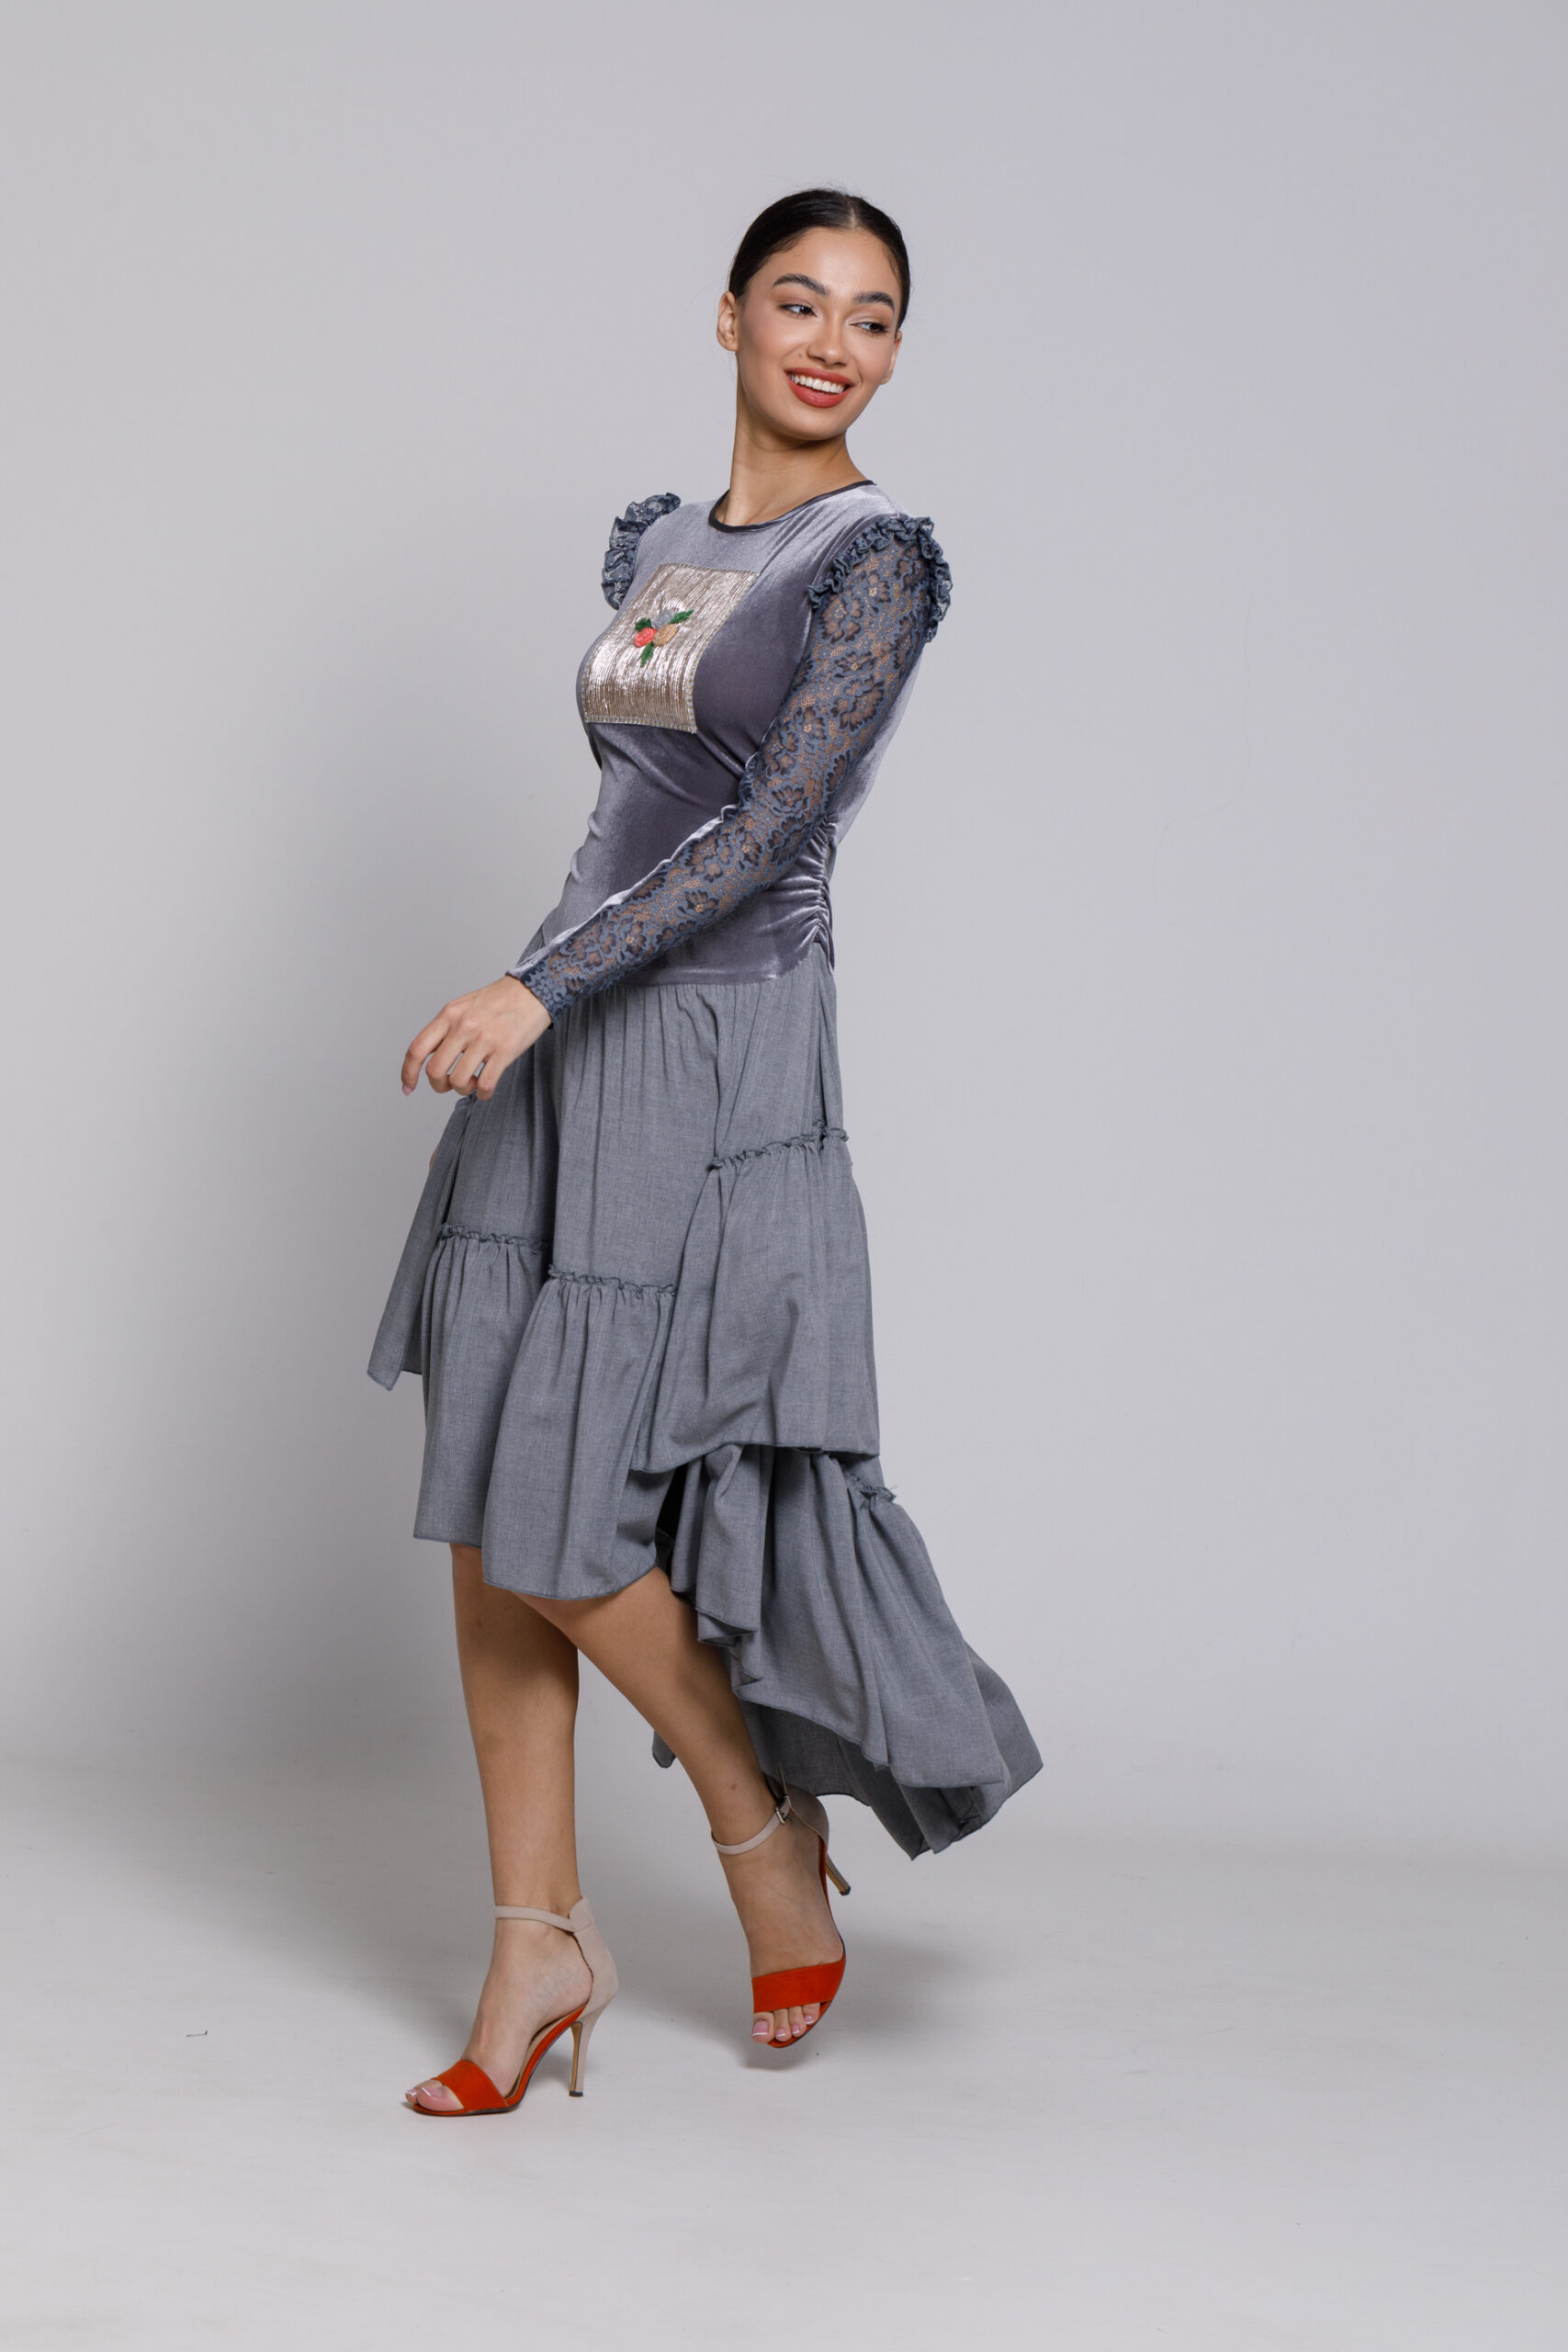 VALENTINO gray velvet and viscose dress. Natural fabrics, original design, handmade embroidery